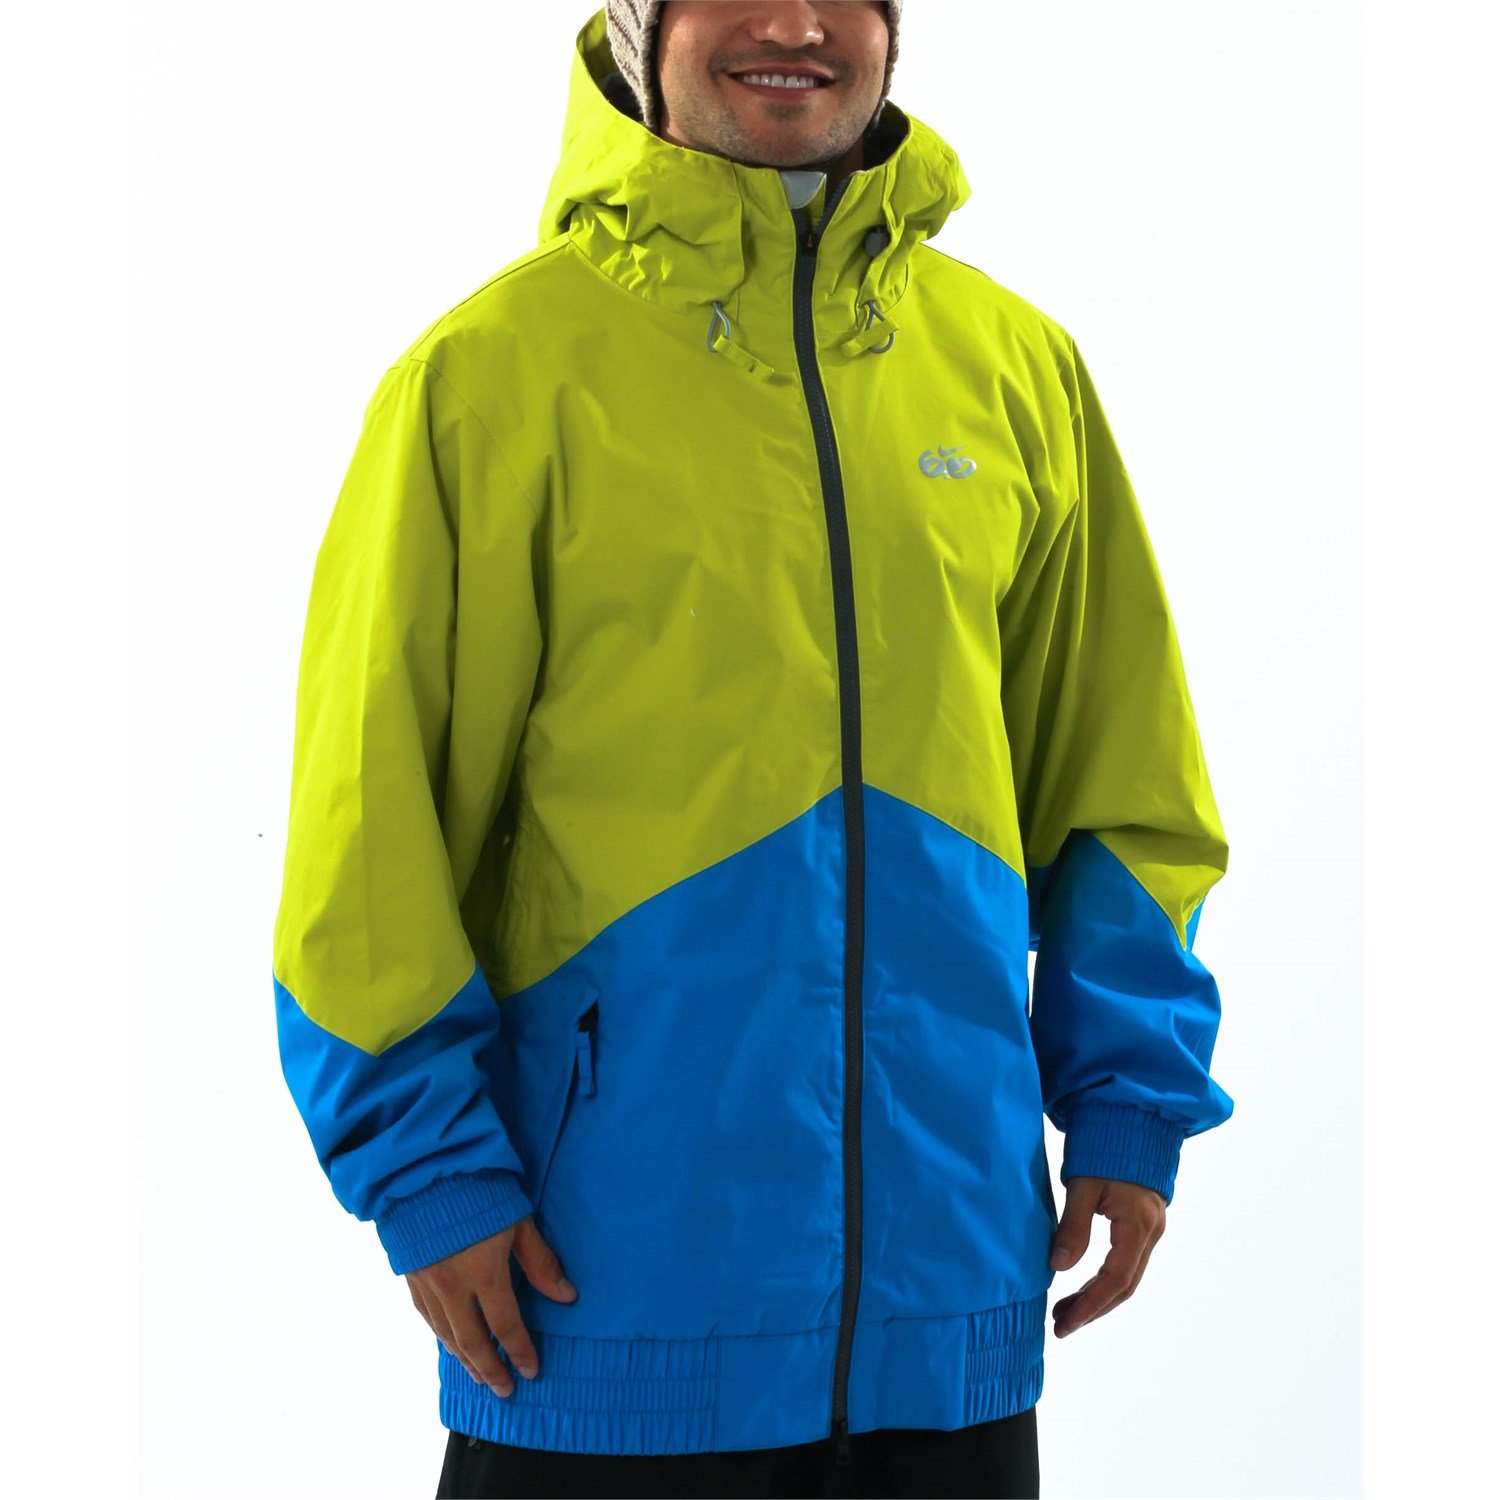 nike 6.0 ski jacket